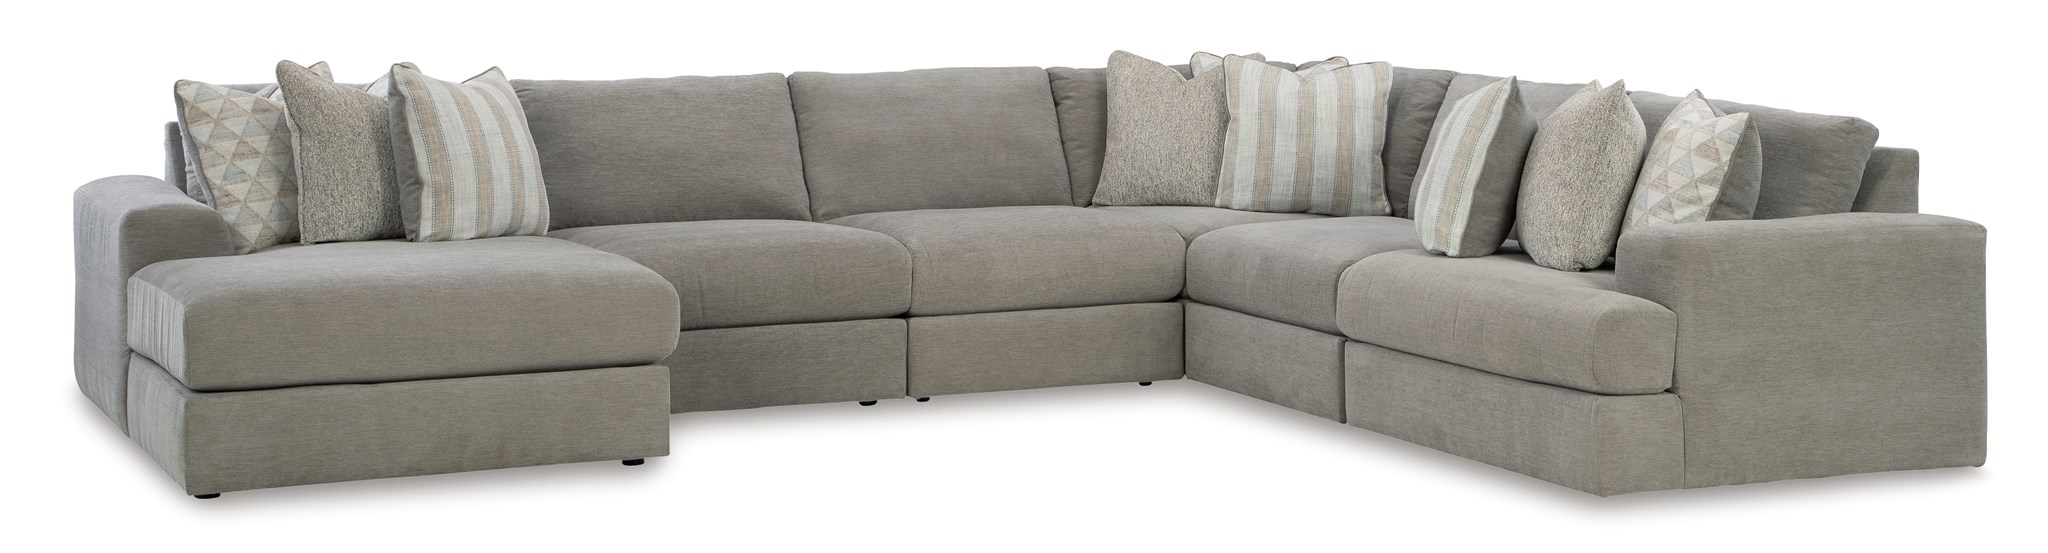 Изображение Модульный диван из 6 частей Avaliyah (правый)